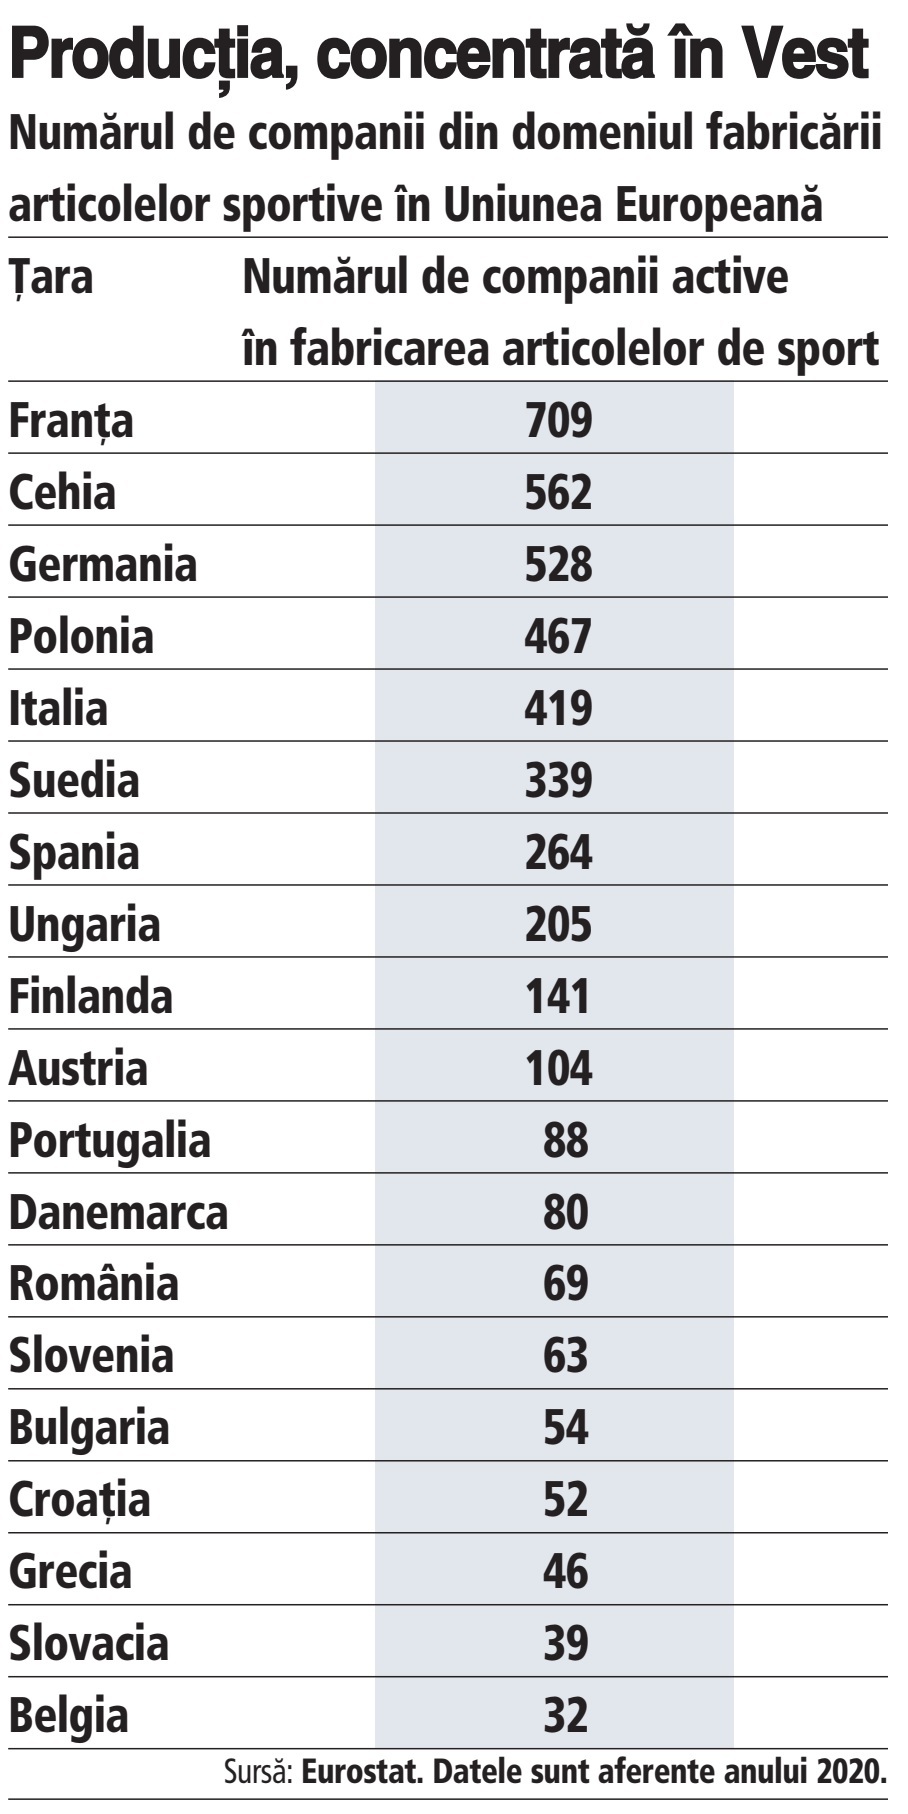 BUSINESS SPORTIV. România are 69 de companii active în fabricarea articolelor sportive, de şapte ori mai puţine decât Polonia